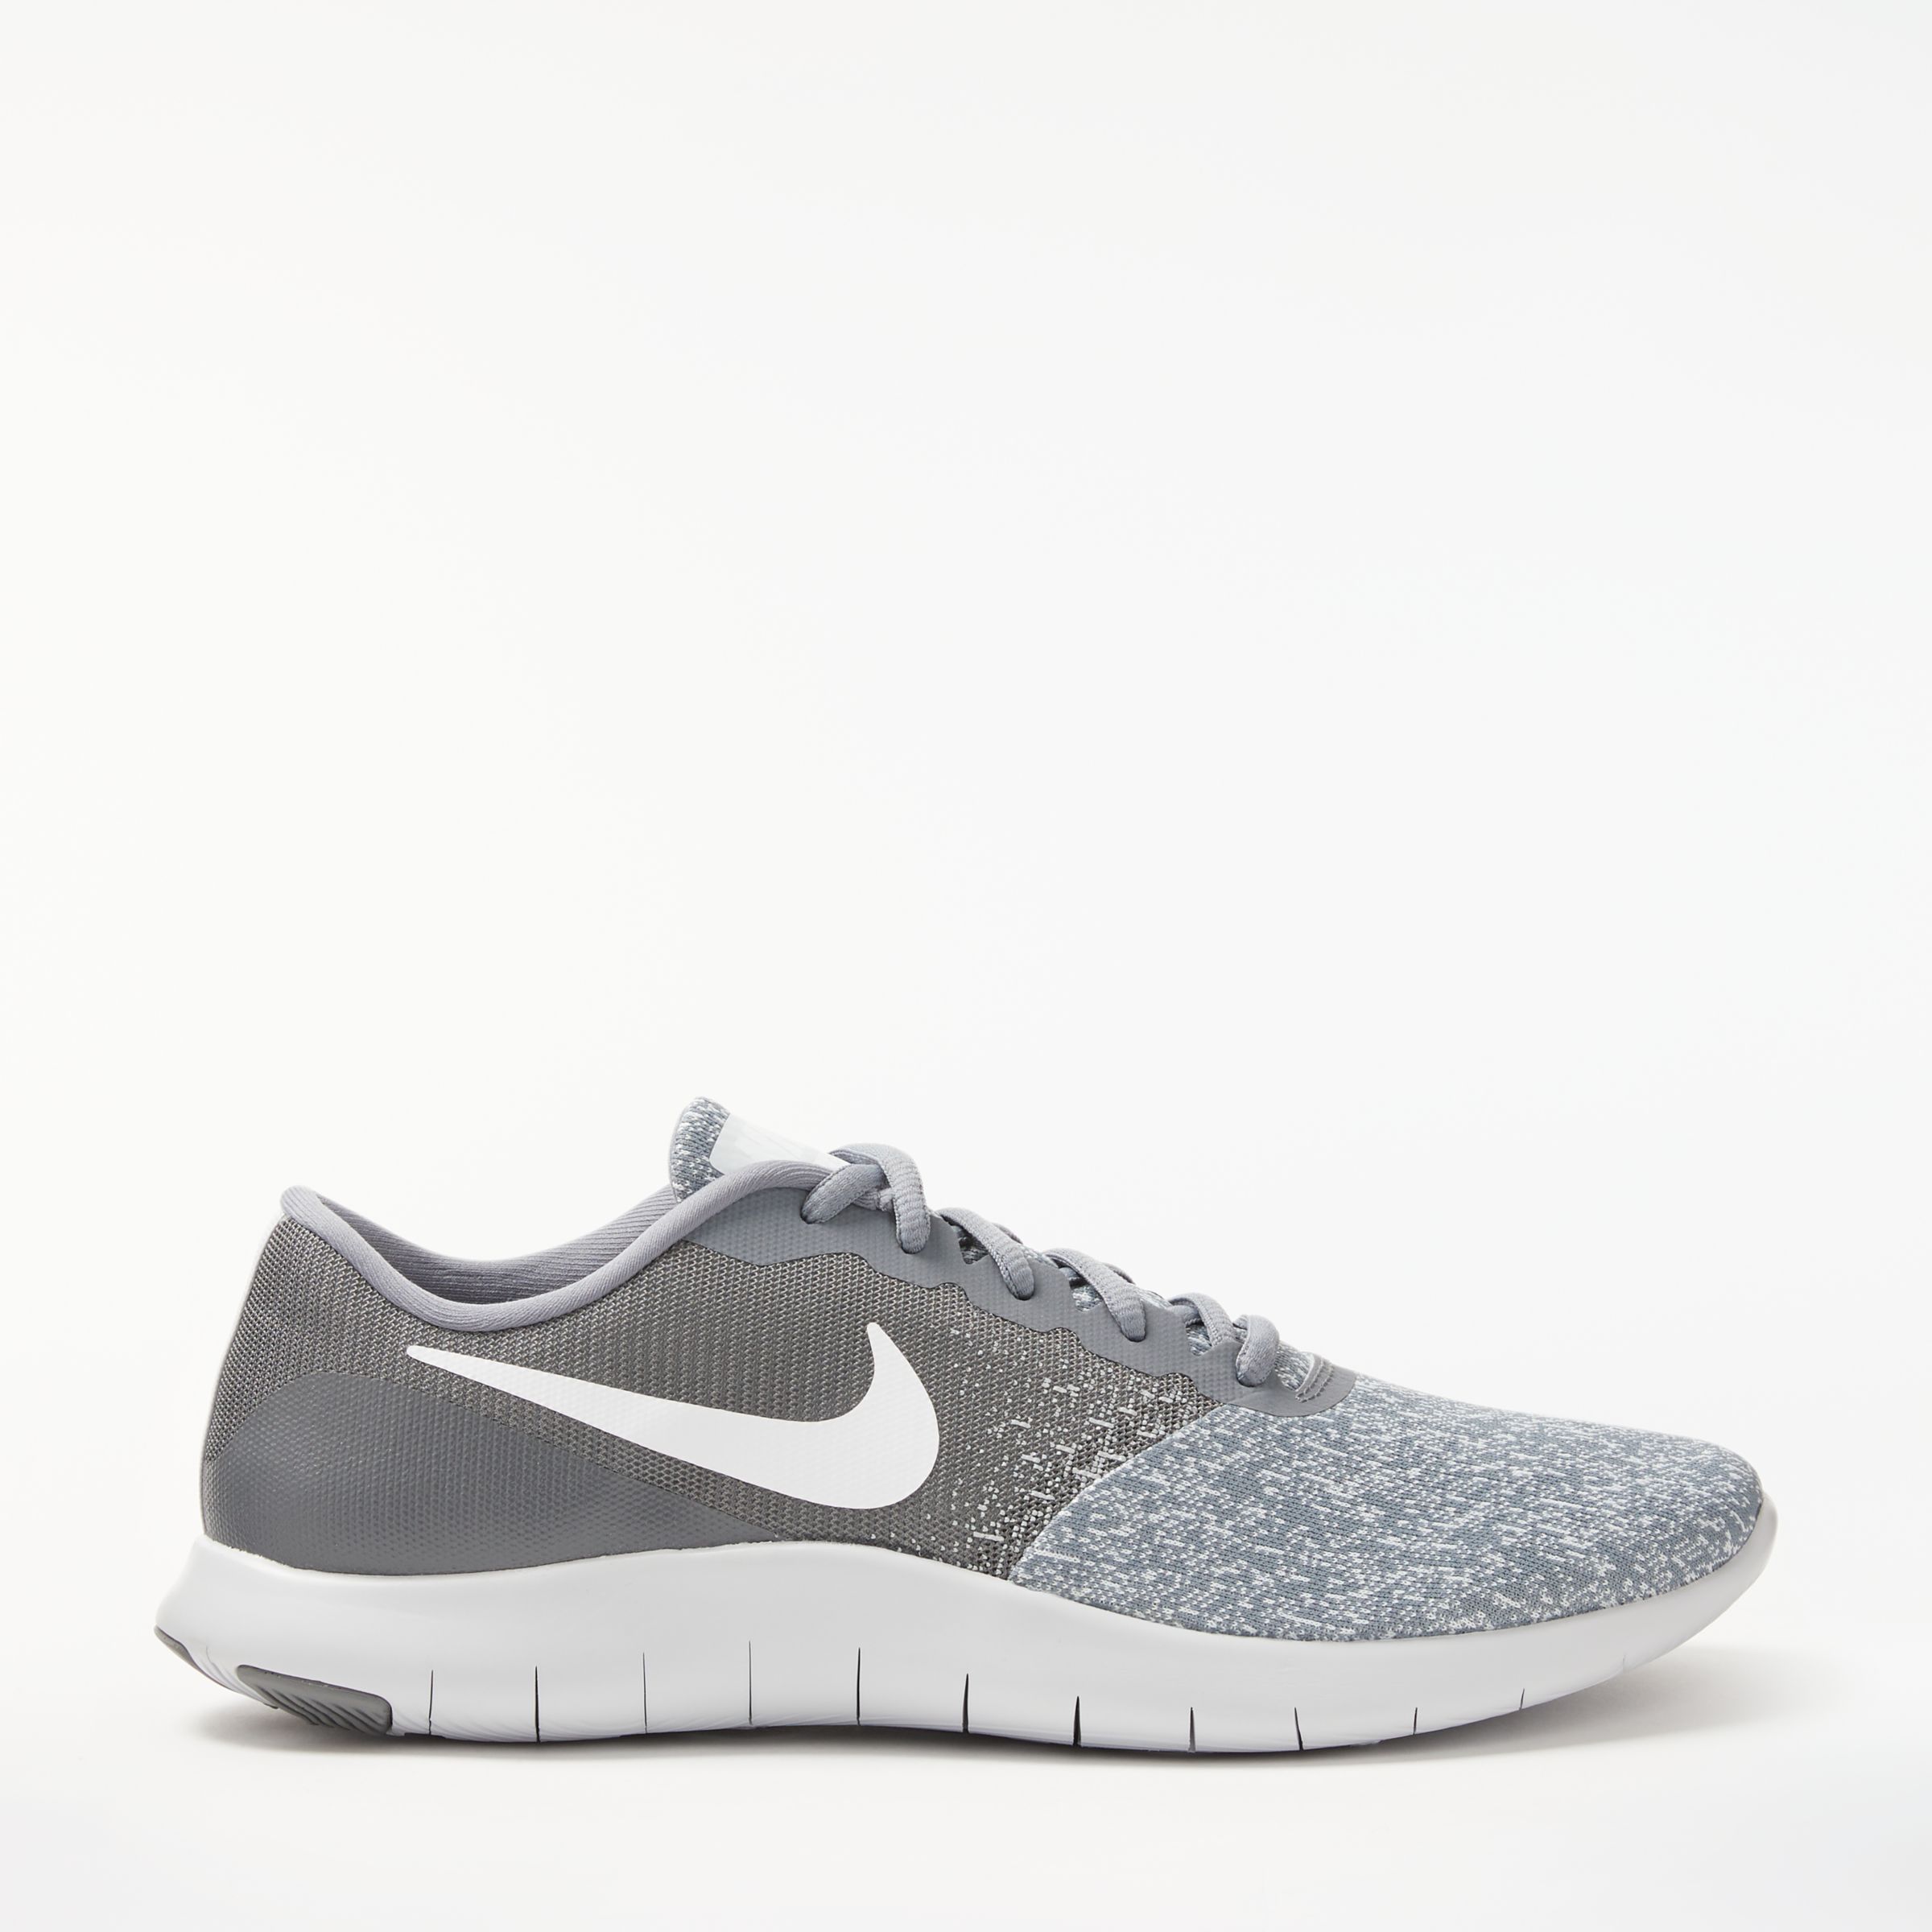 nike flex contact grey running shoes